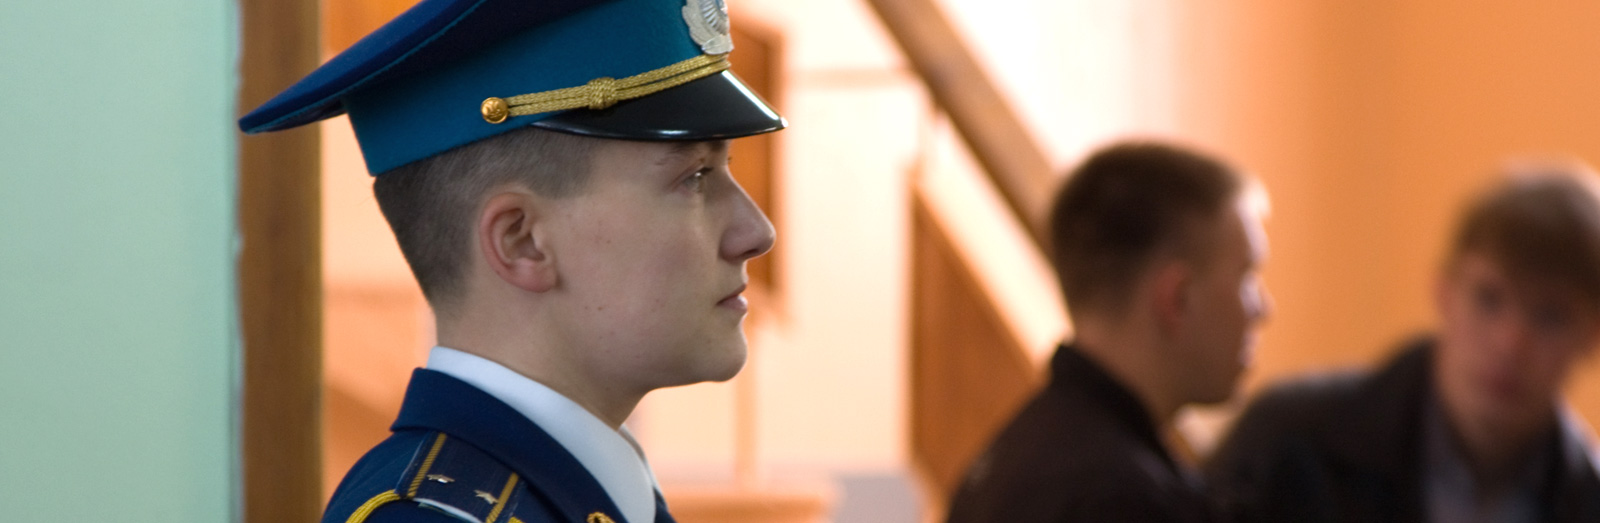 Пуля против Кремля. Как летчица Надя Савченко стала символом украинского сопротивления